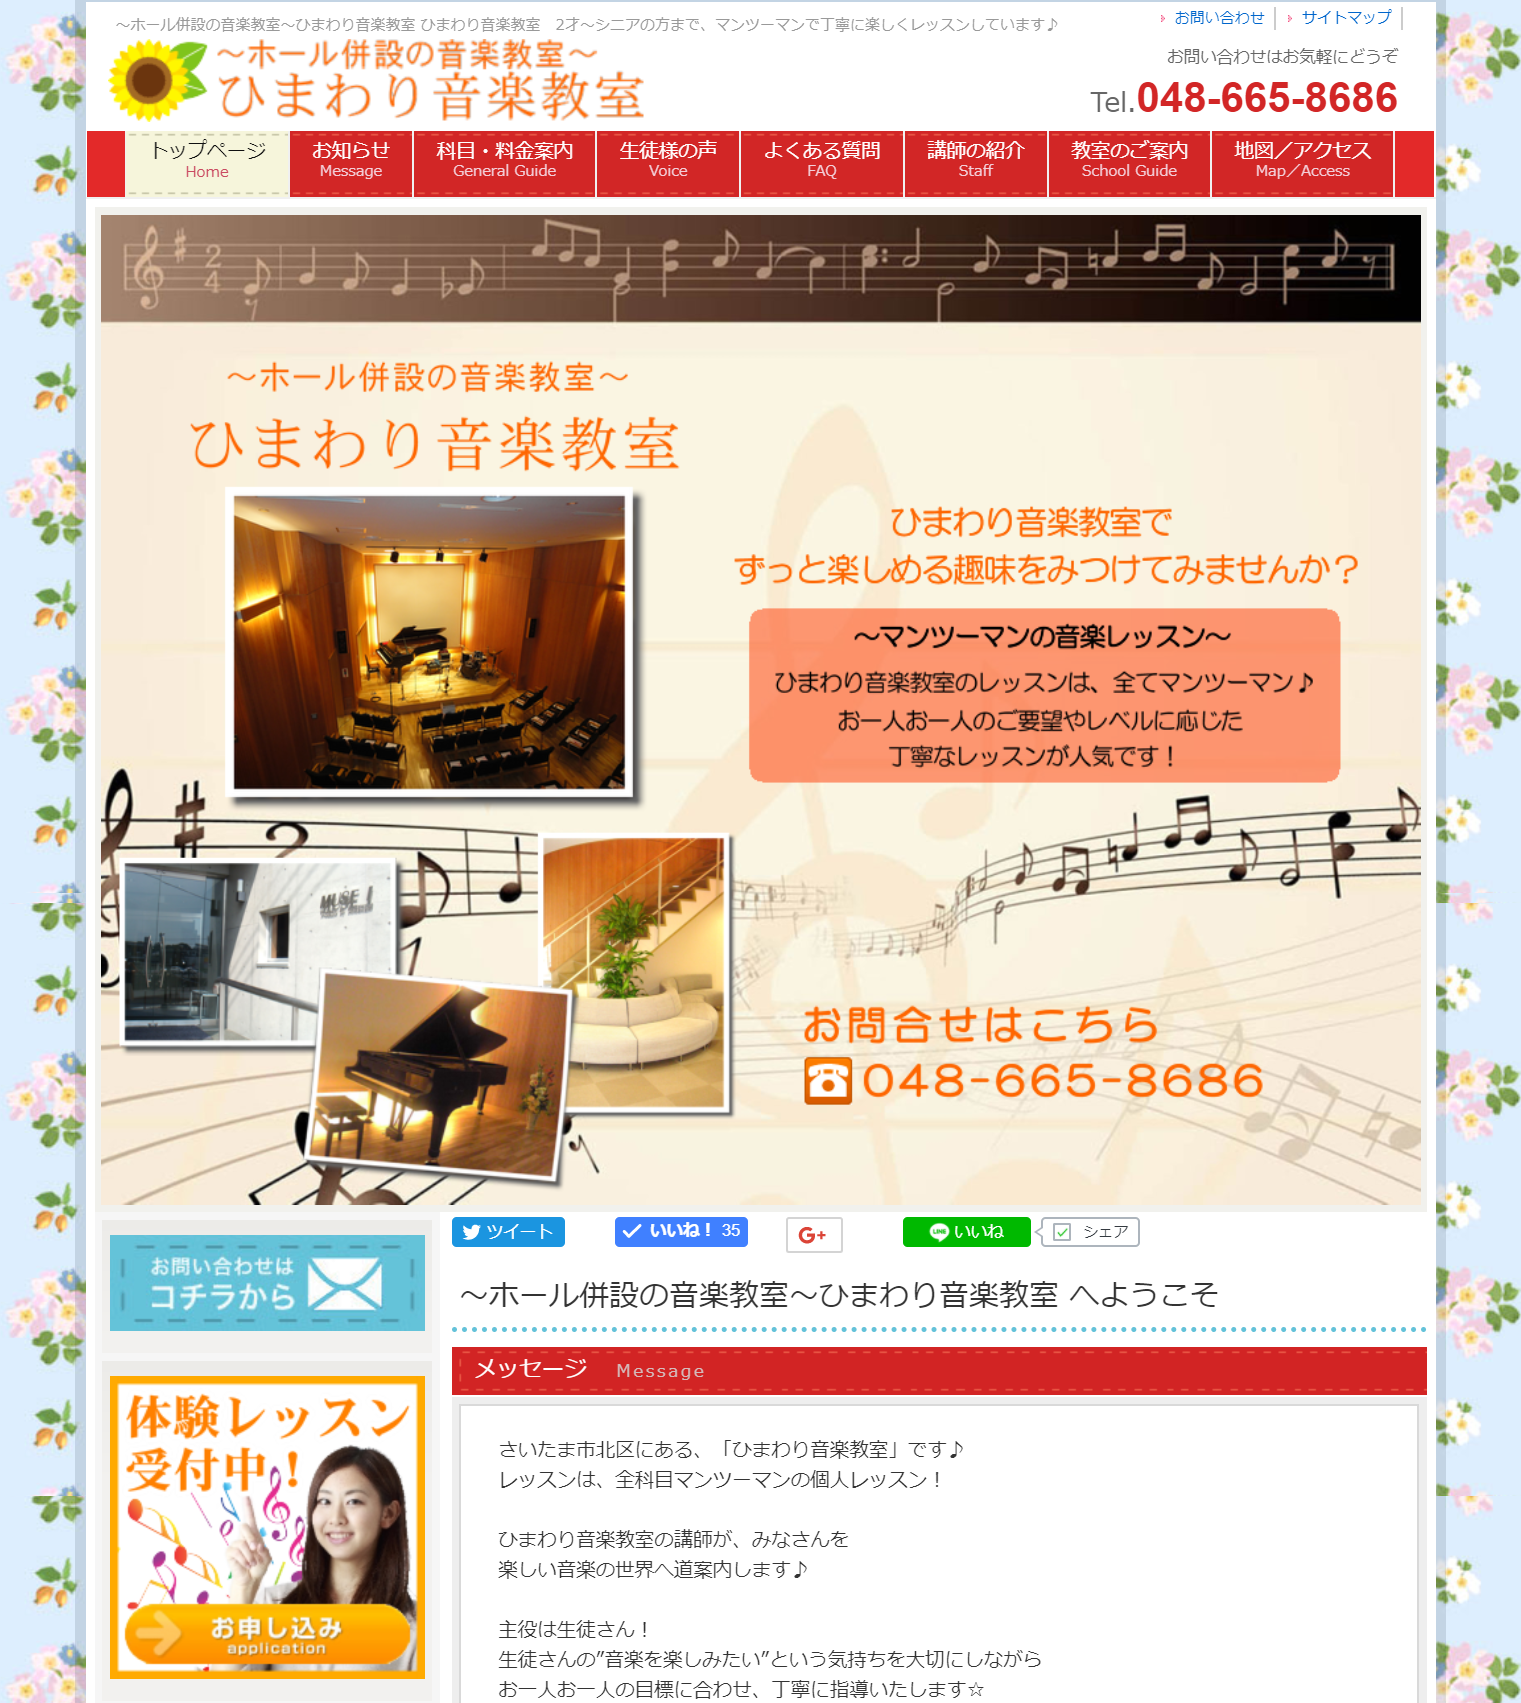 埼玉県さいたま市の「ひまわり音楽教室」を経営なさっている櫻井 ゆかさん